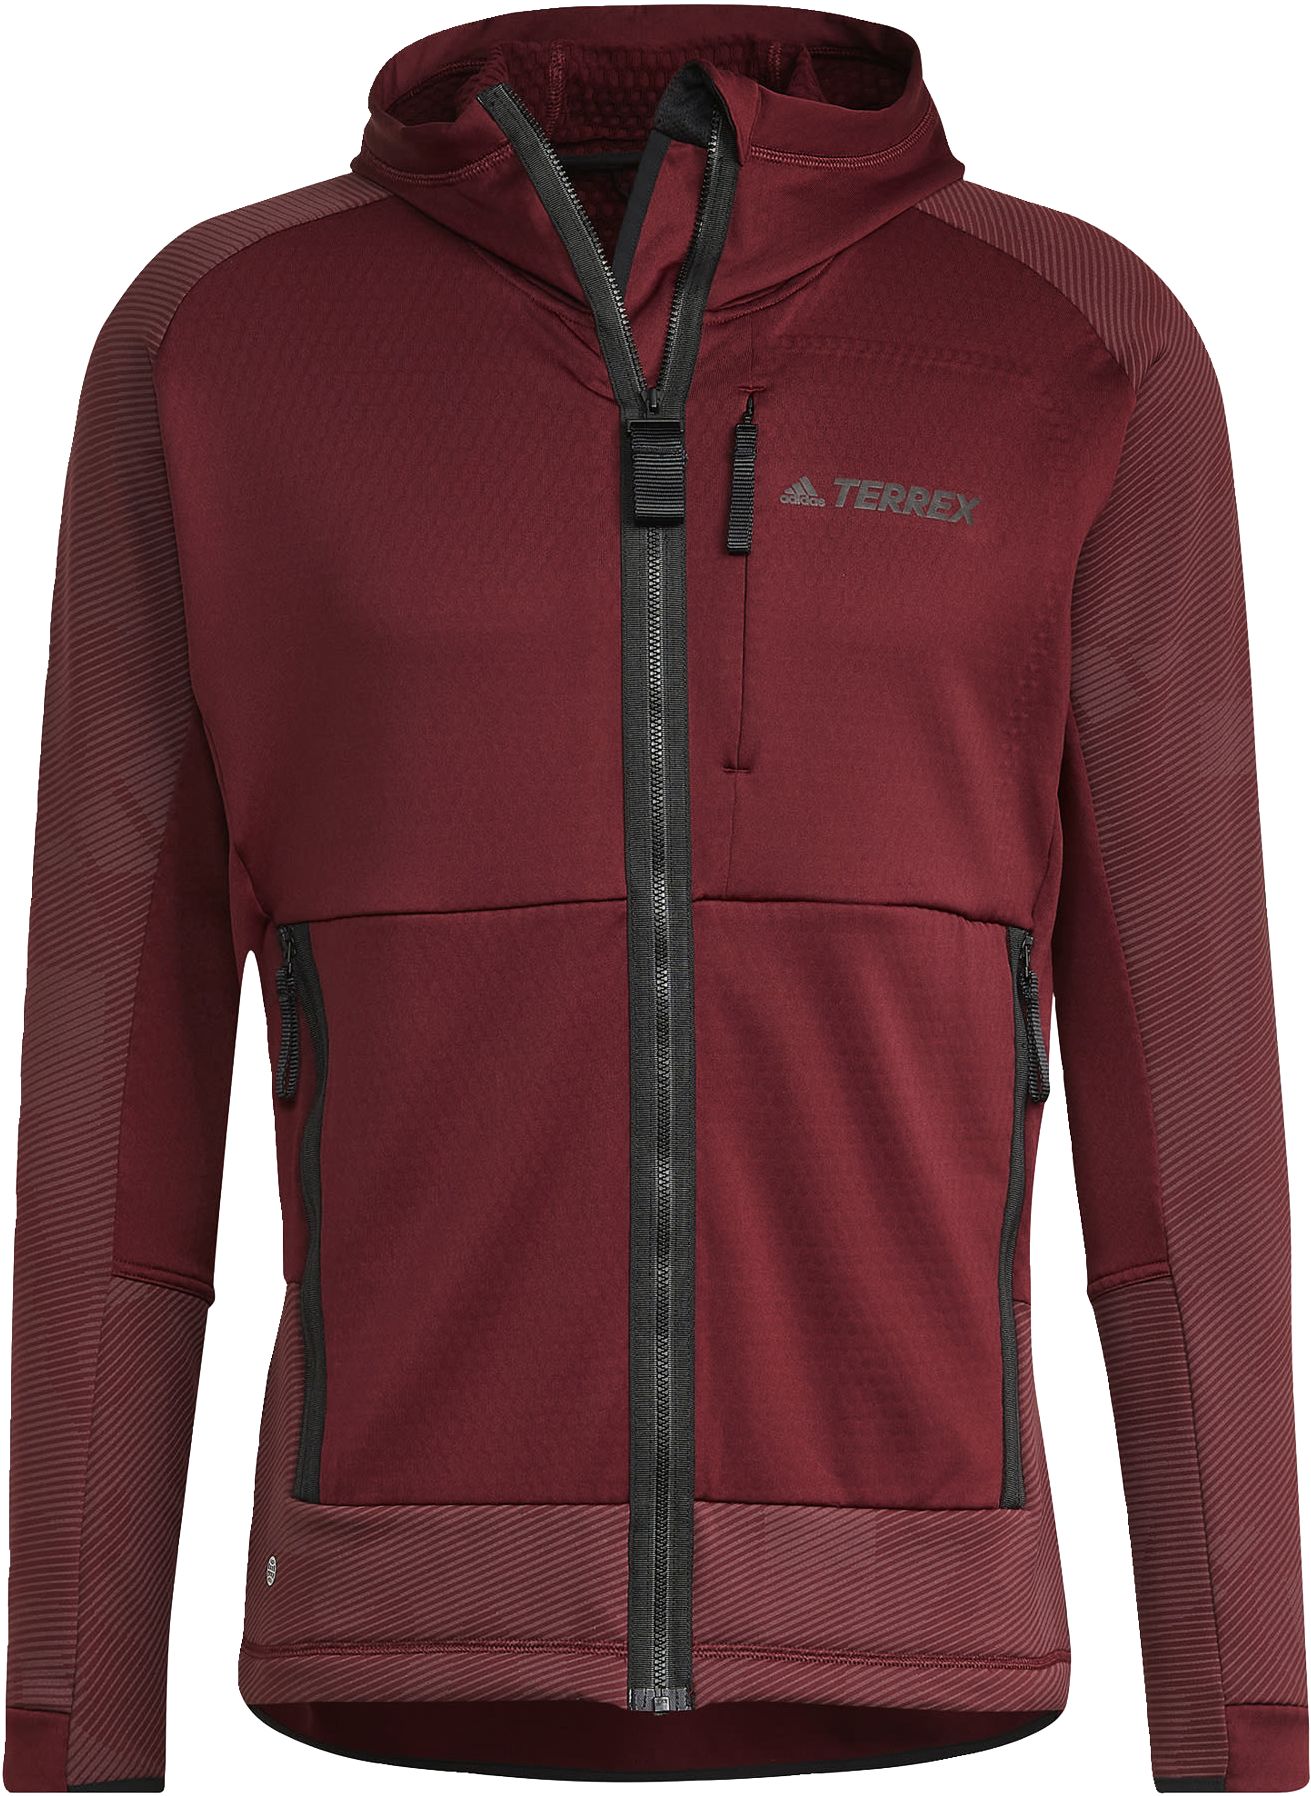 ADIDAS, Terrex Tech Flooce Hooded Hiking Fleece Jacket